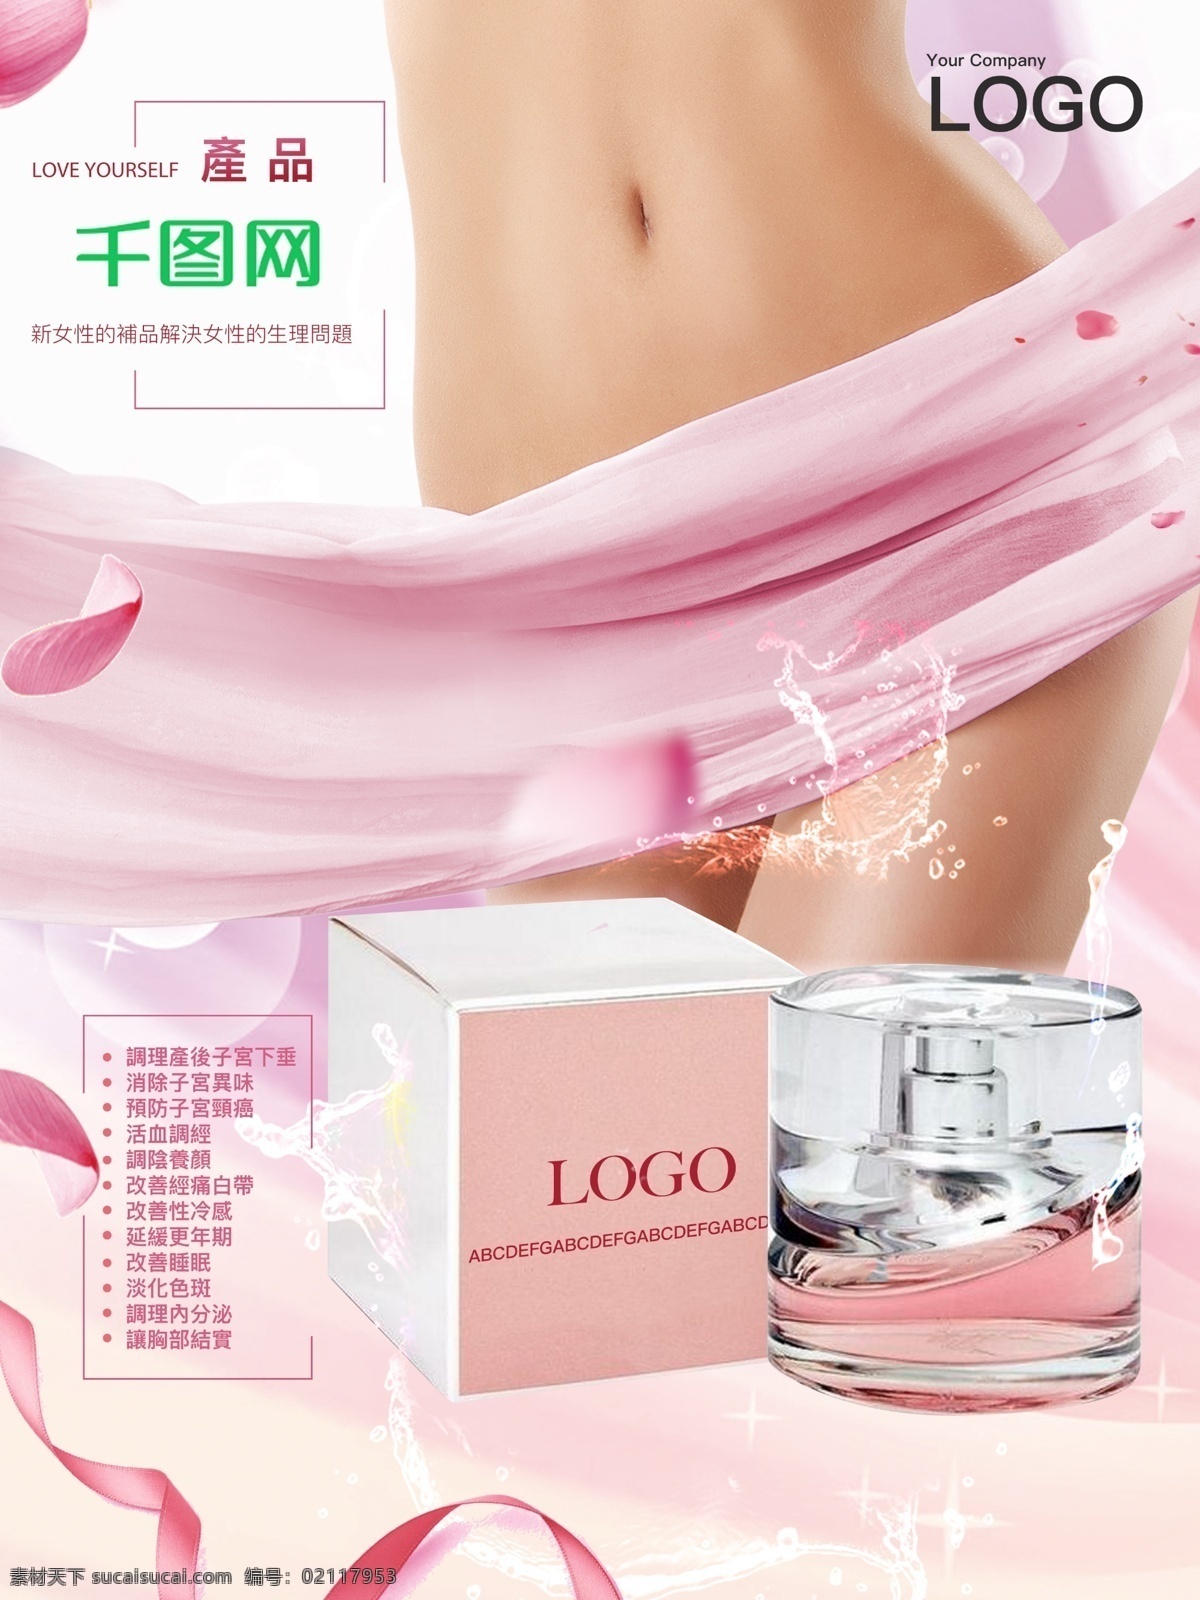 女性 产品 商业 宣传海报 促销 宣传 化妆品 展板 女性产品 海报商品